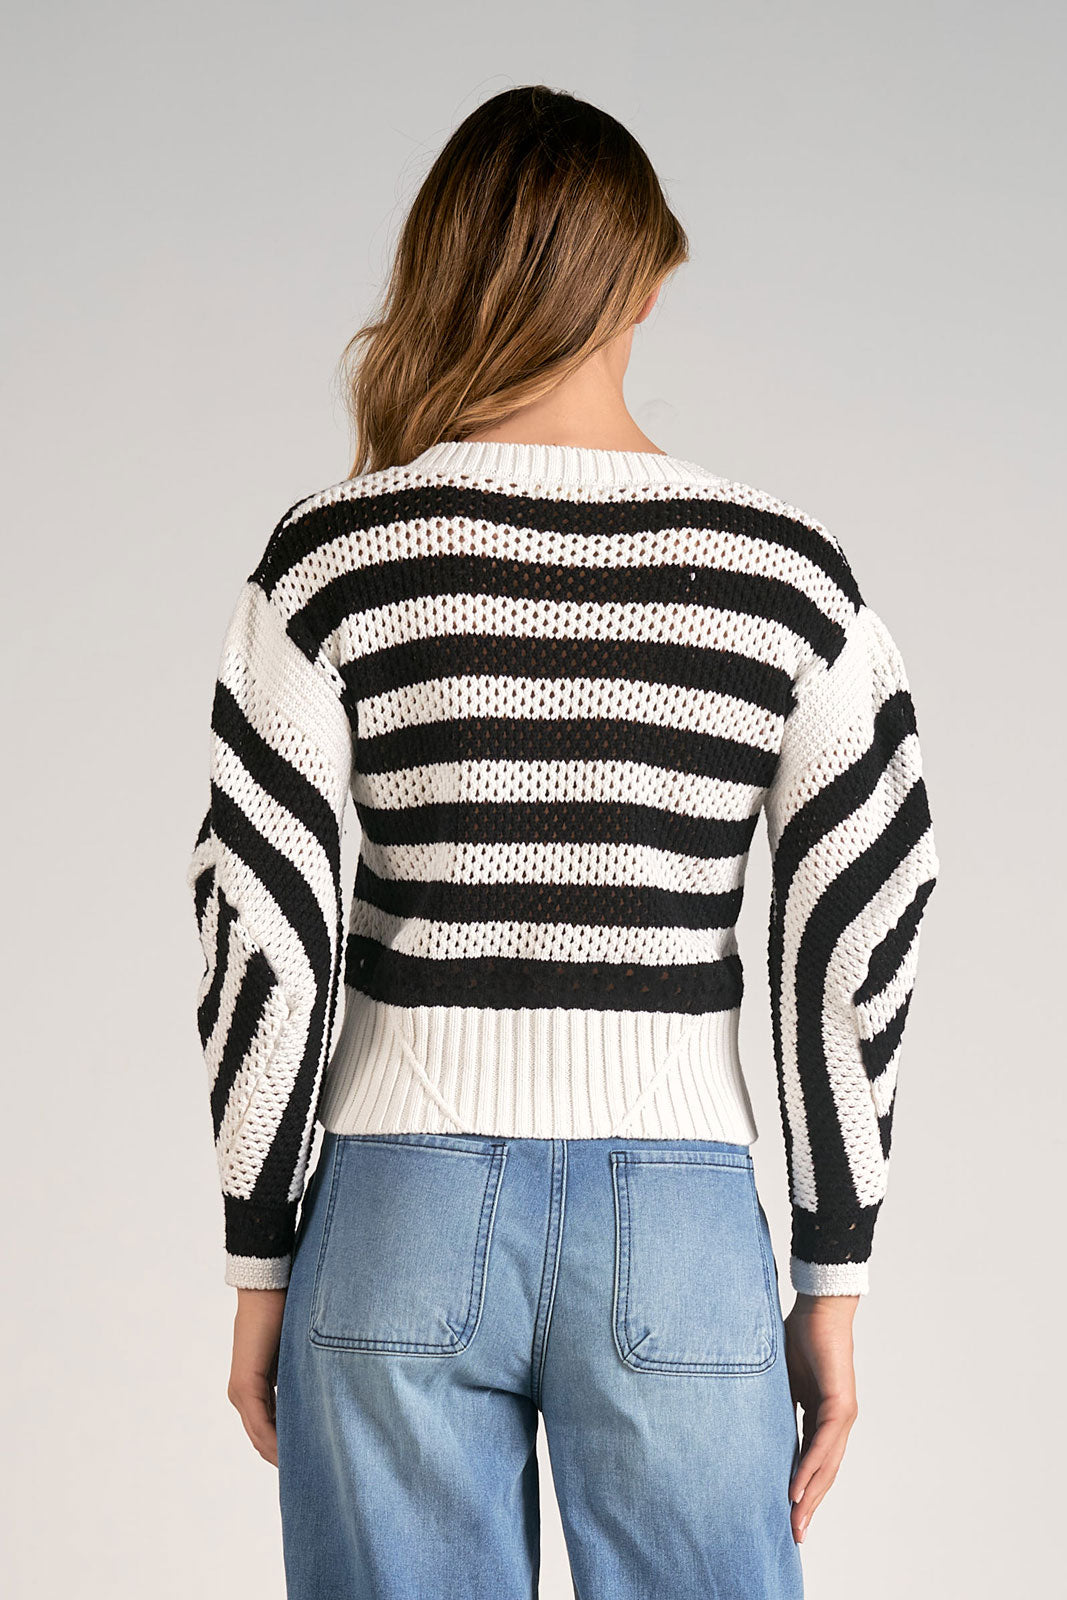 Elan Striped Boatneck Sweater